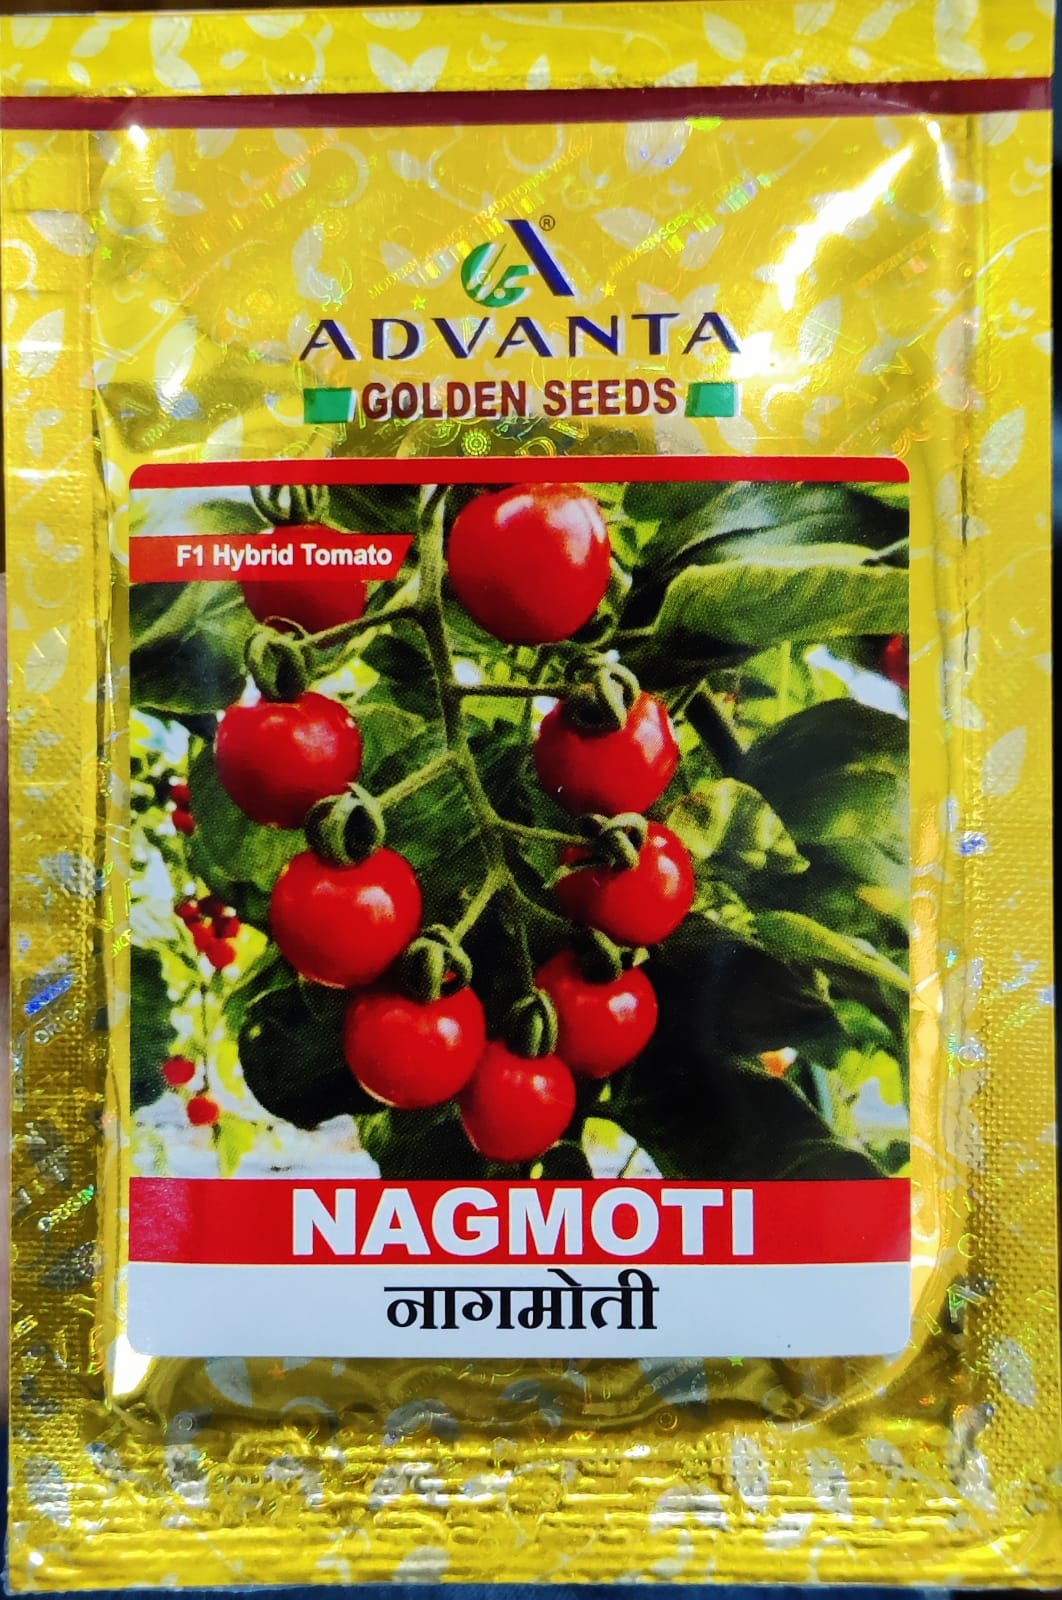 Tomato Nagmoti (Advanta Golden Seeds)